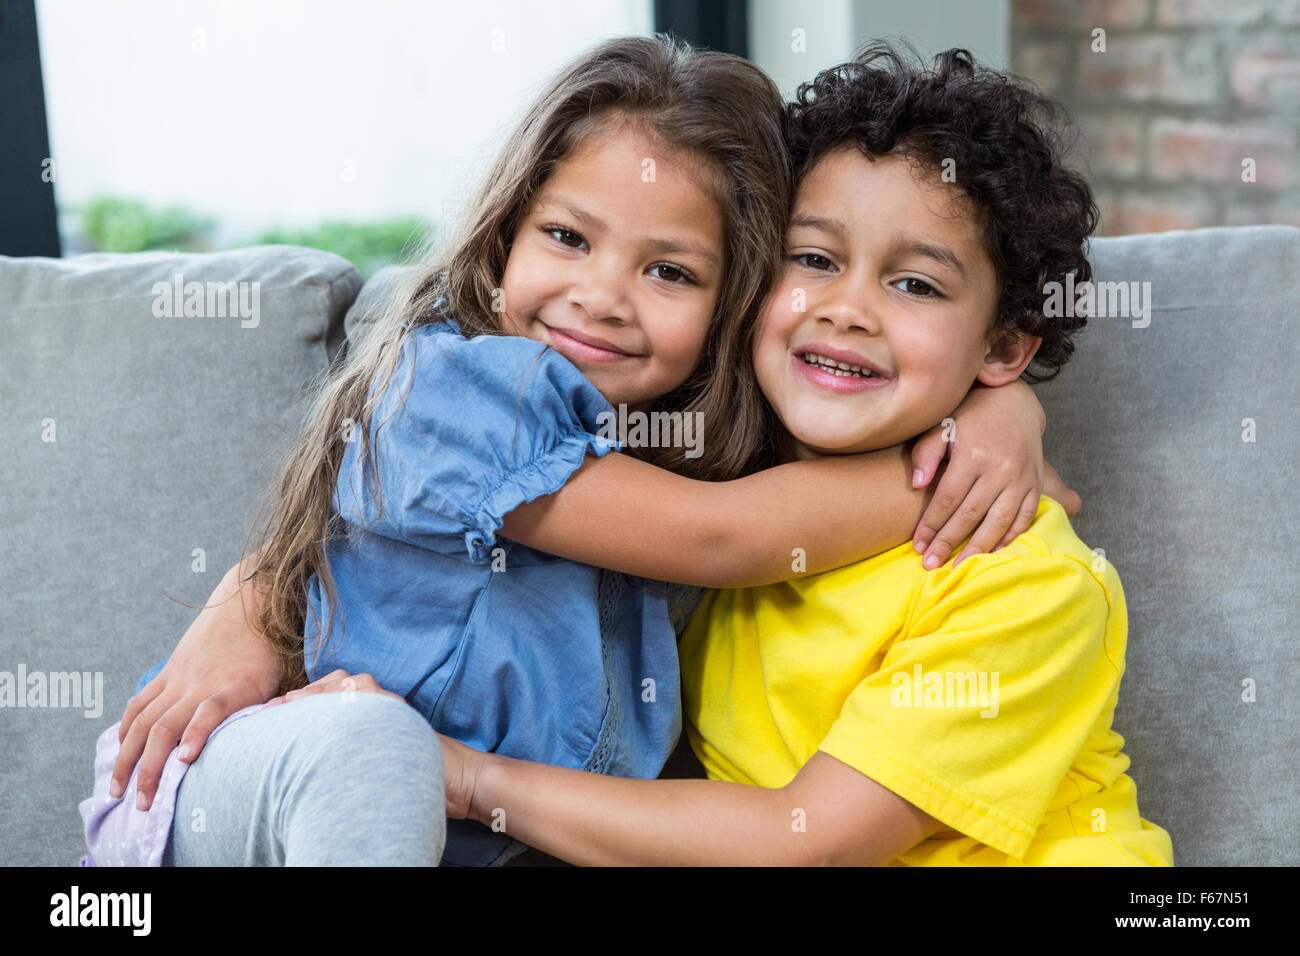 Cute siblings hugging Stock Photo